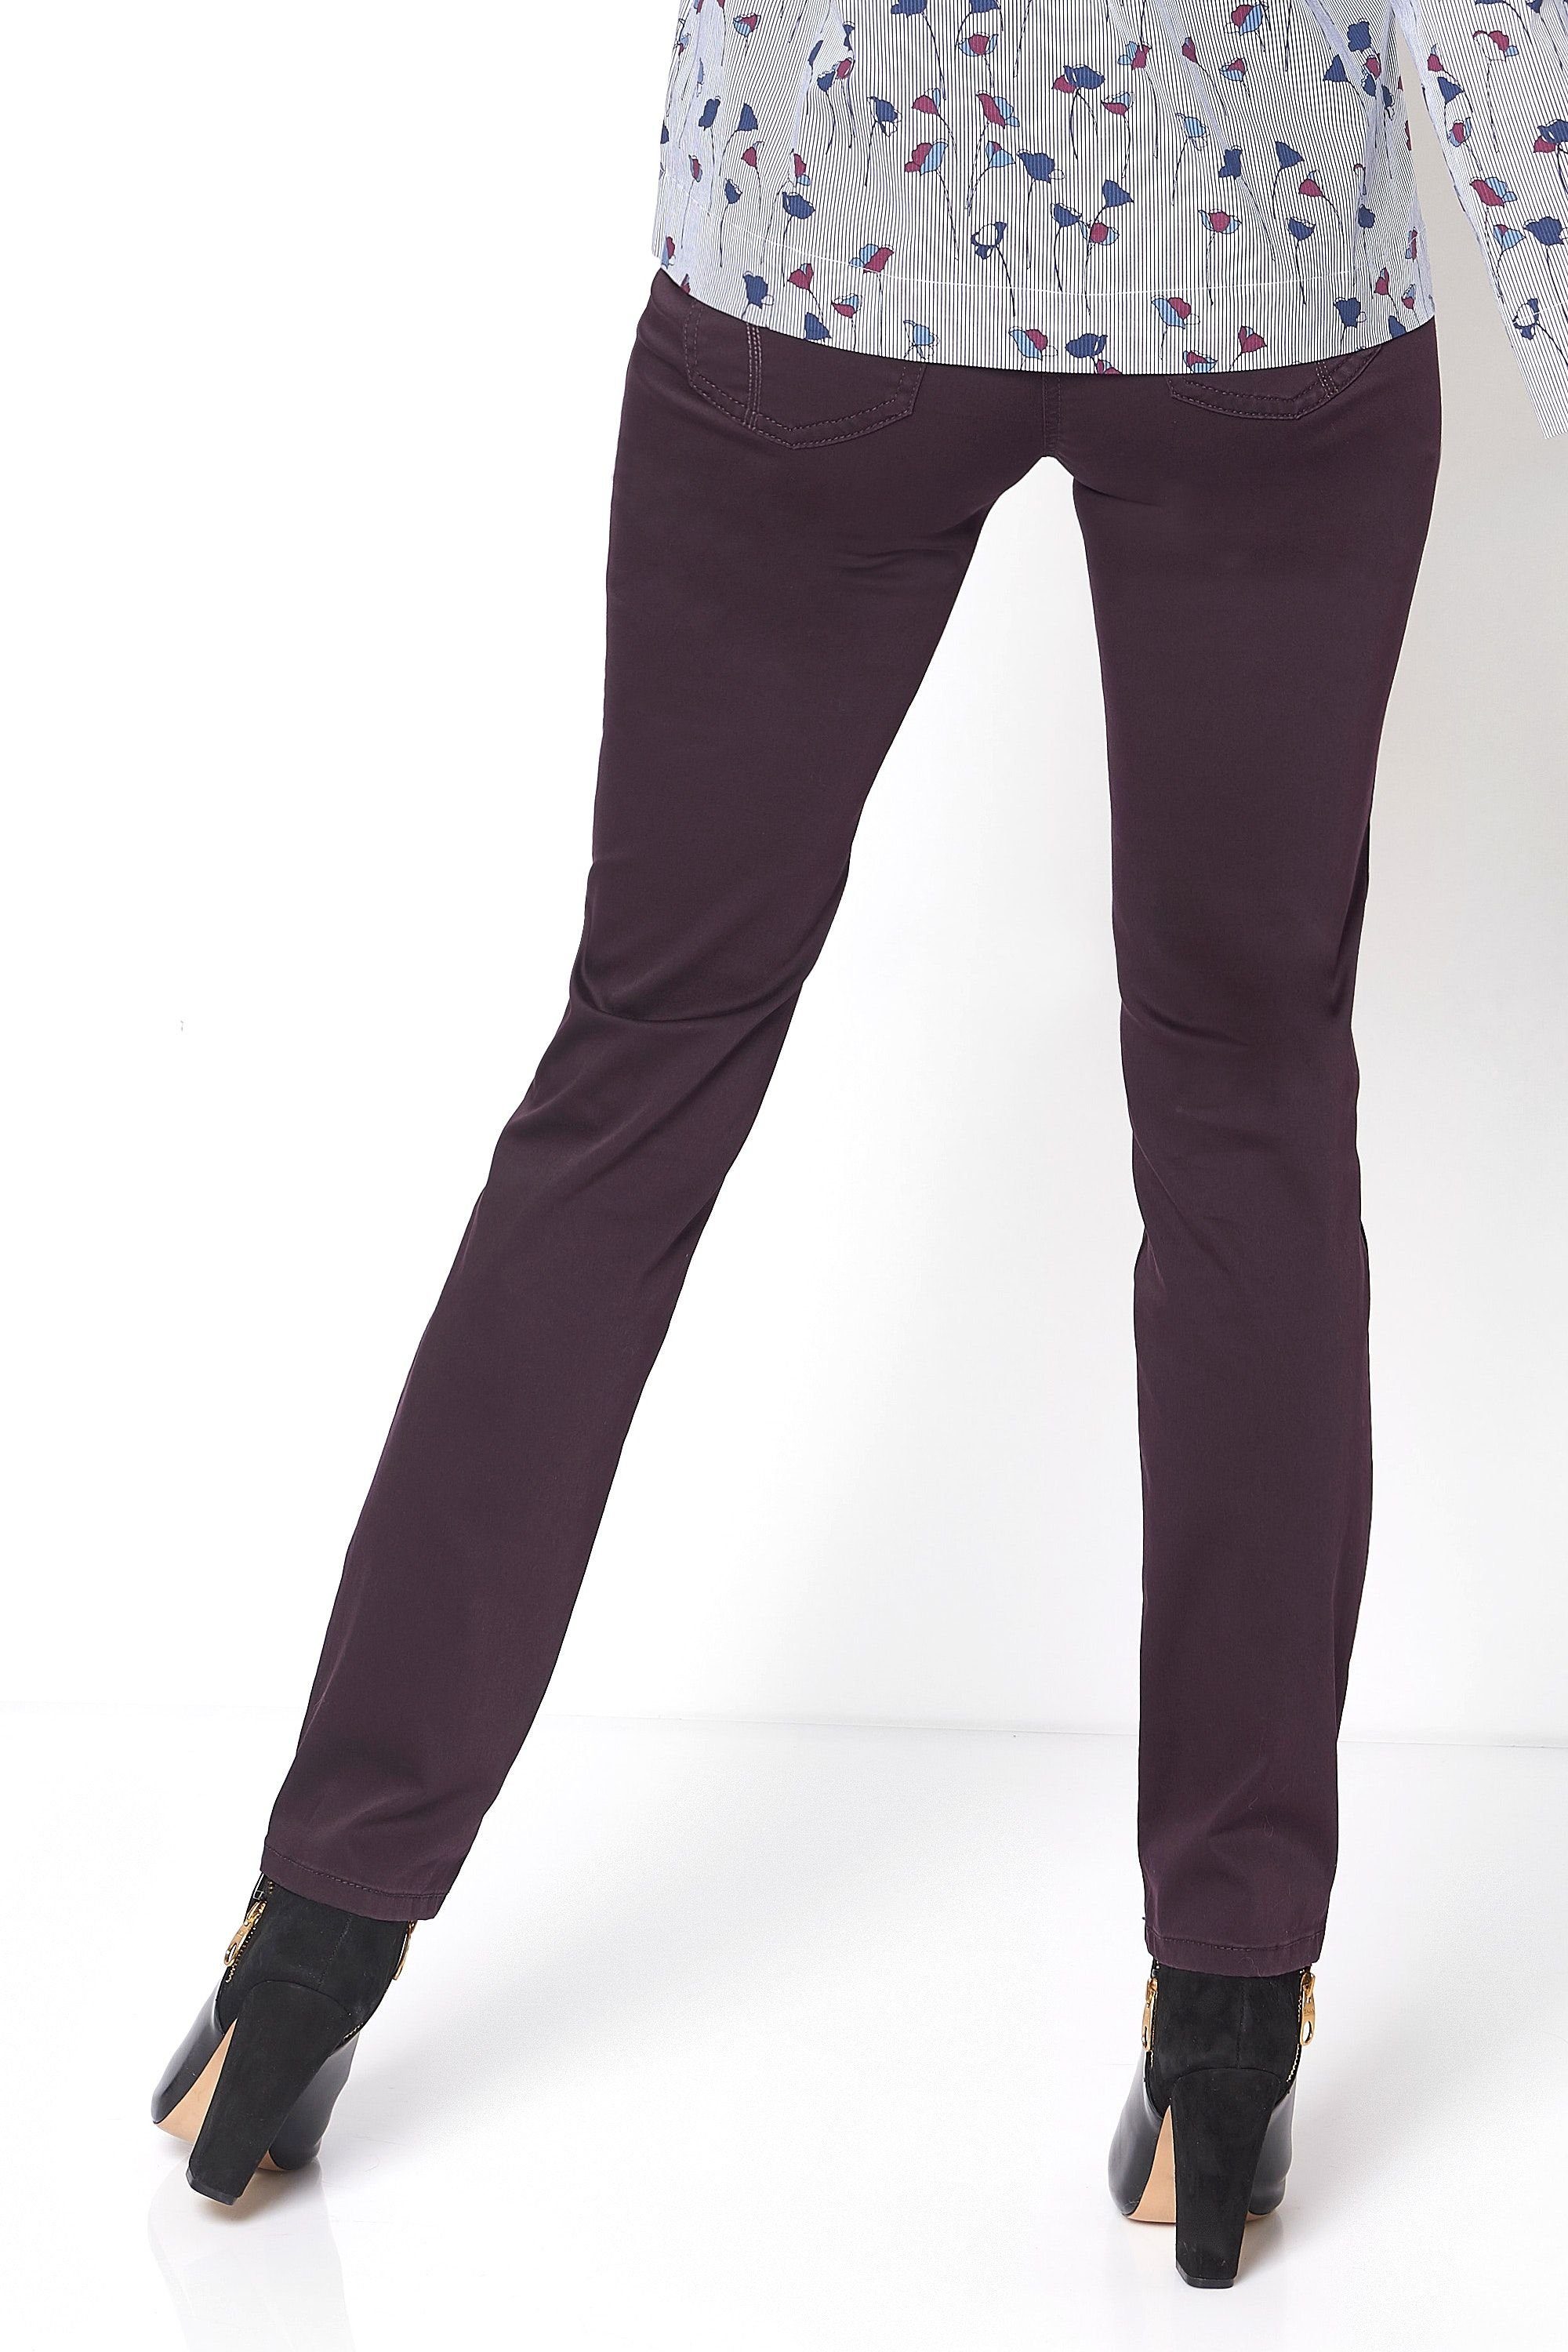 TONI 5-Pocket-Jeans plum